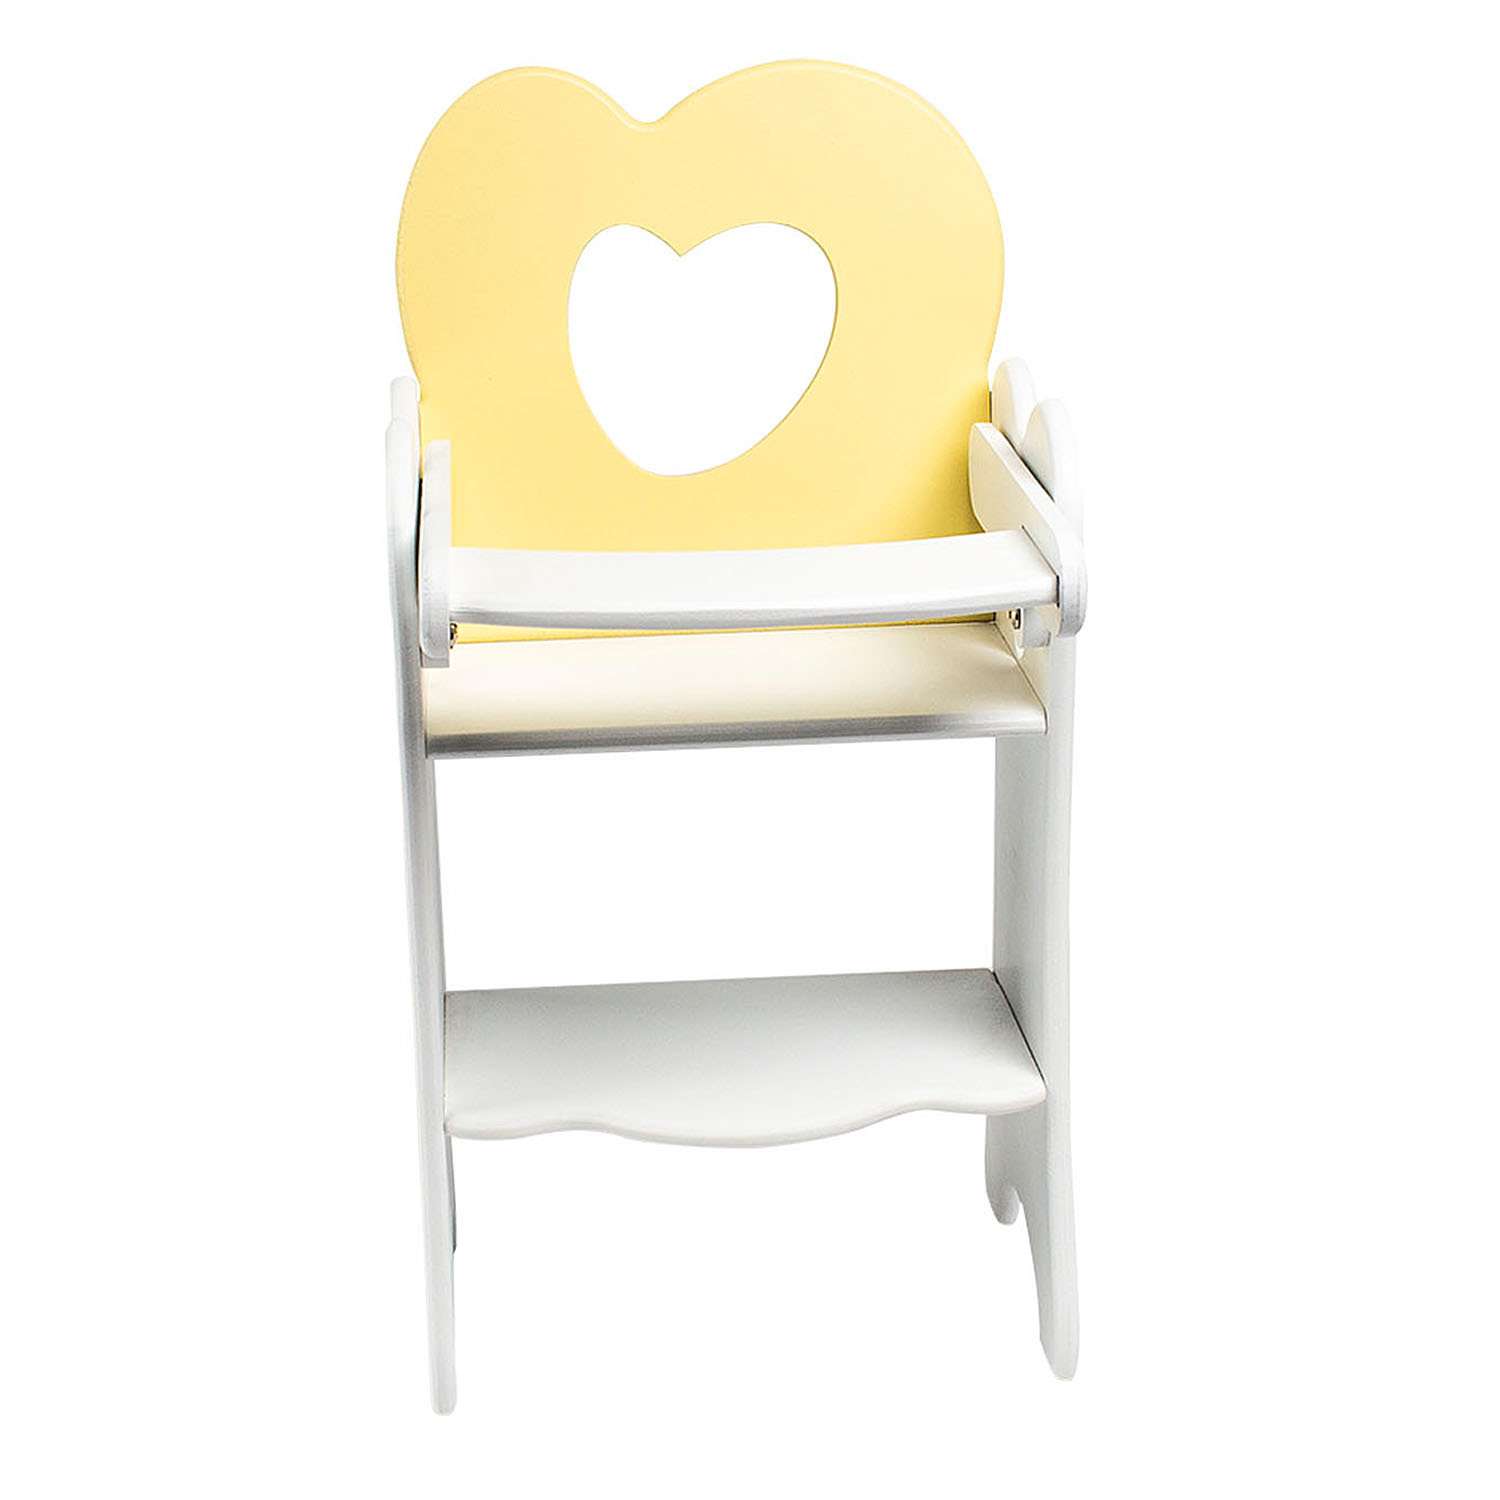 Мебель для кукол PAREMO Стульчик Нежно-желтый PFD120-31 PFD120-31 - фото 1